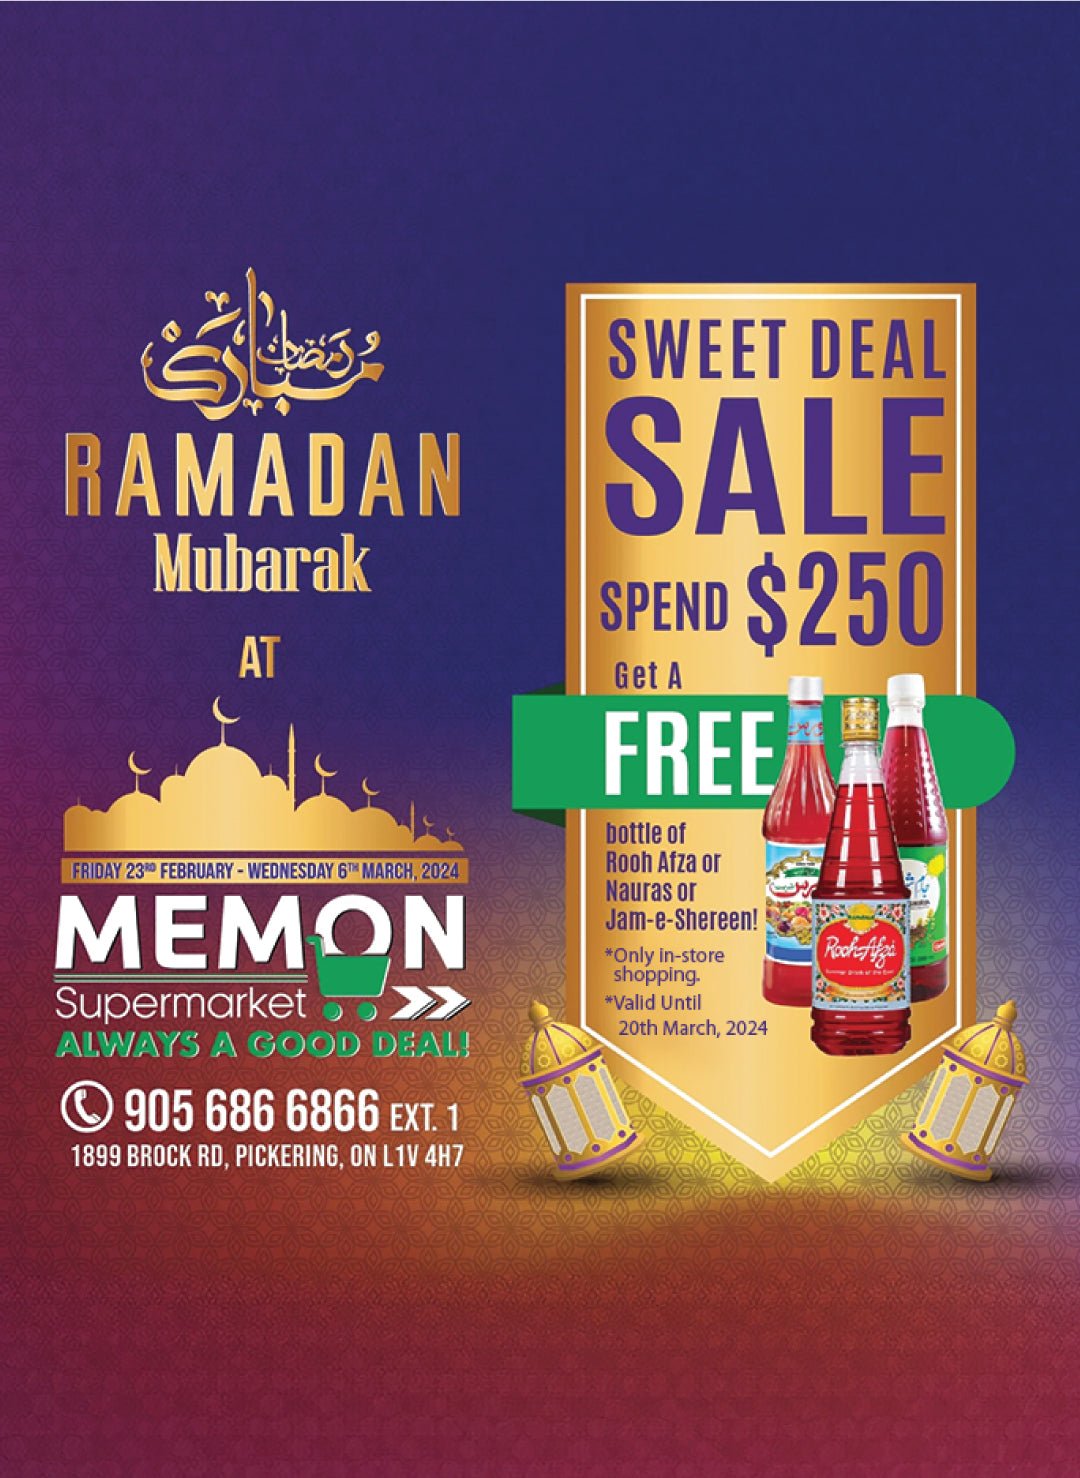 Ramadan Mubarak - Sweet Deal!